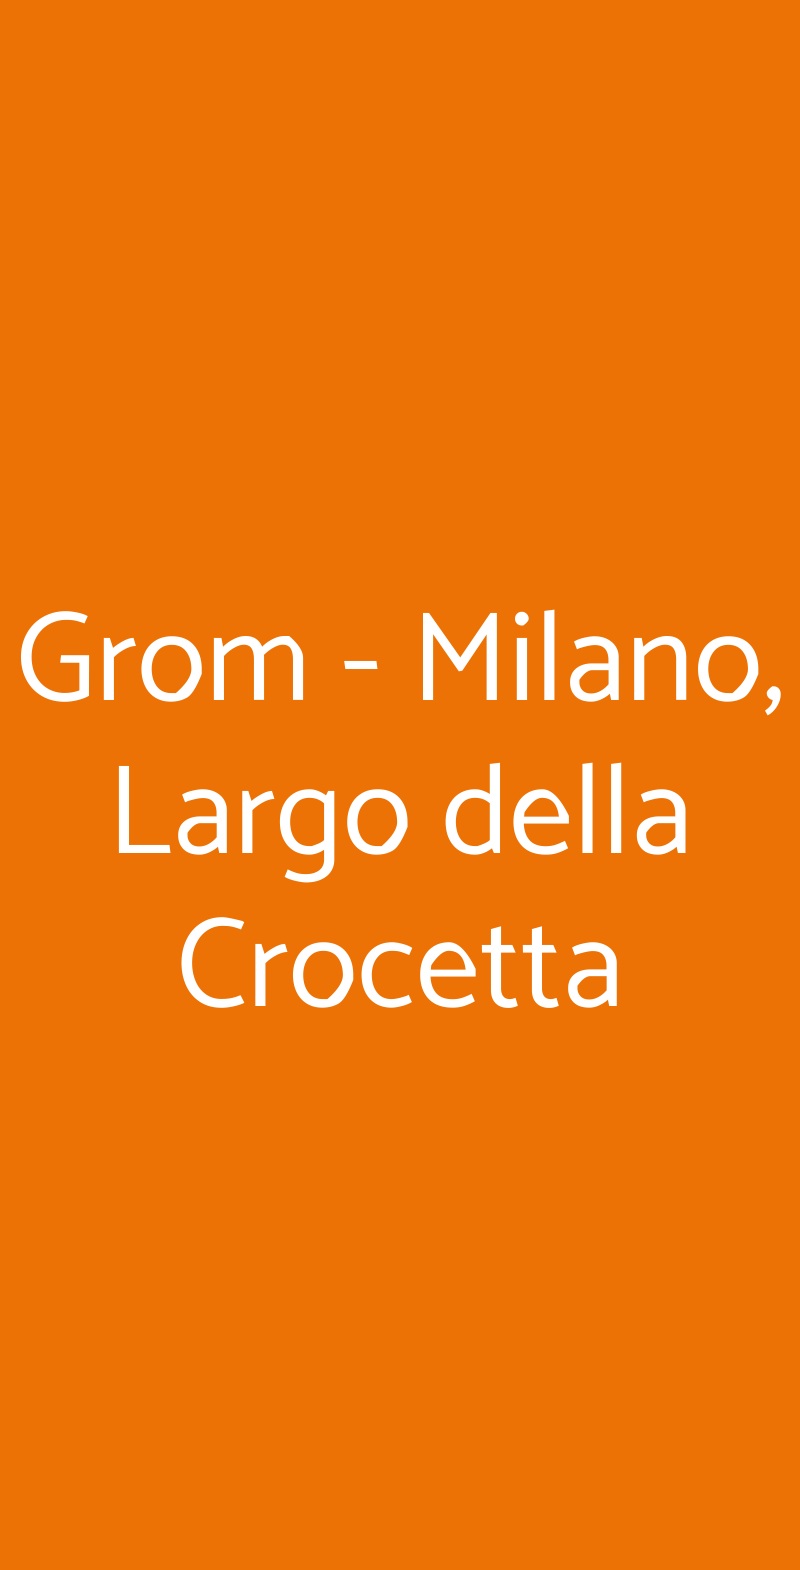 Grom - Milano, Largo della Crocetta Milano menù 1 pagina